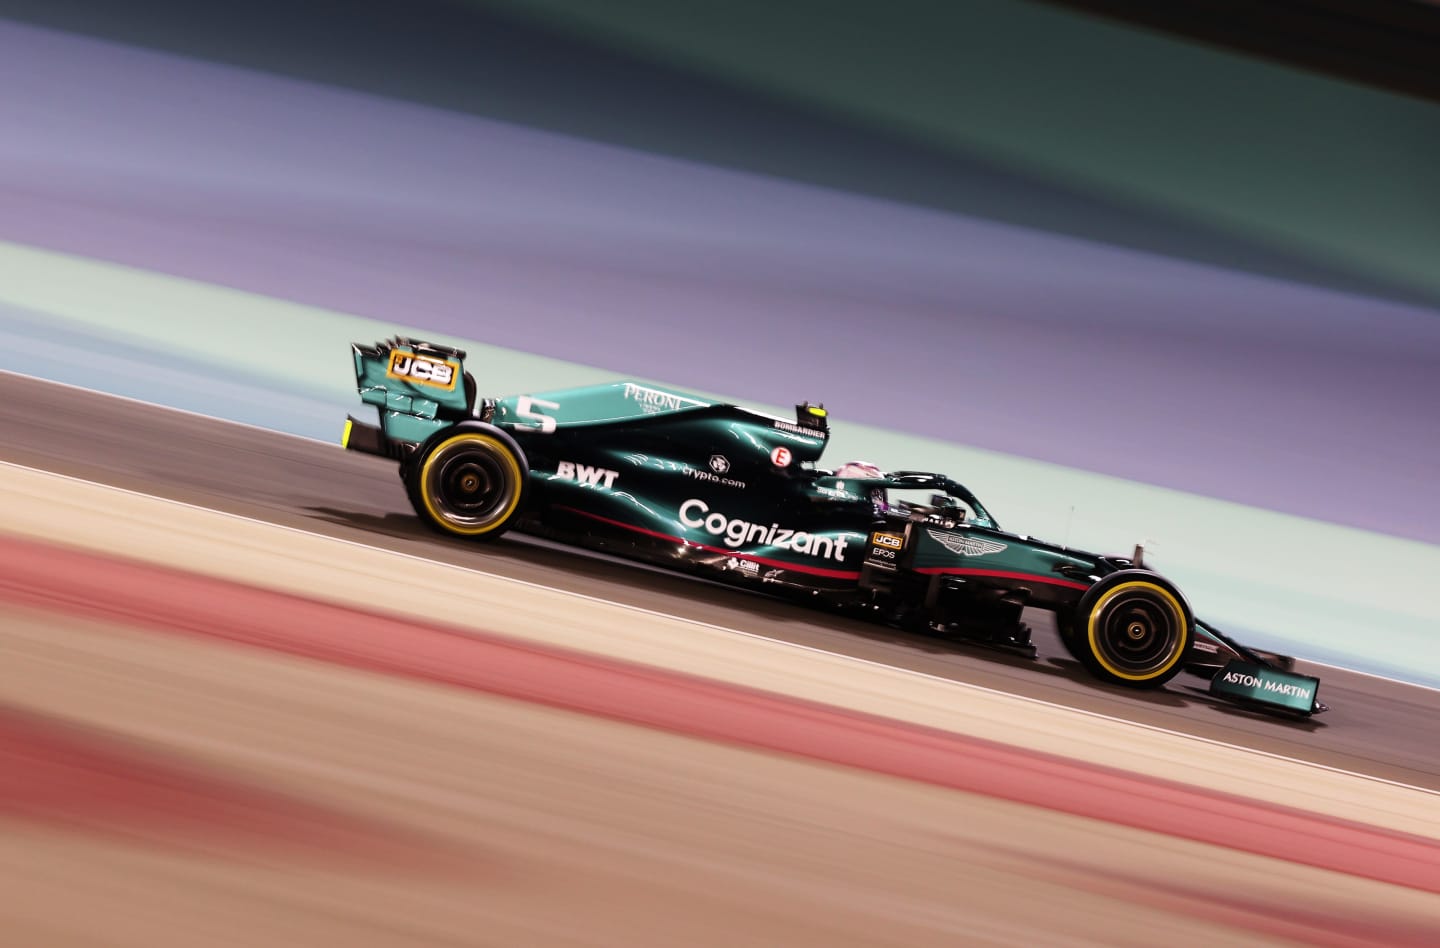 BAHRAIN, BAHRAIN - MARCH 26: Sebastian Vettel of Germany driving the (5) Aston Martin AMR21